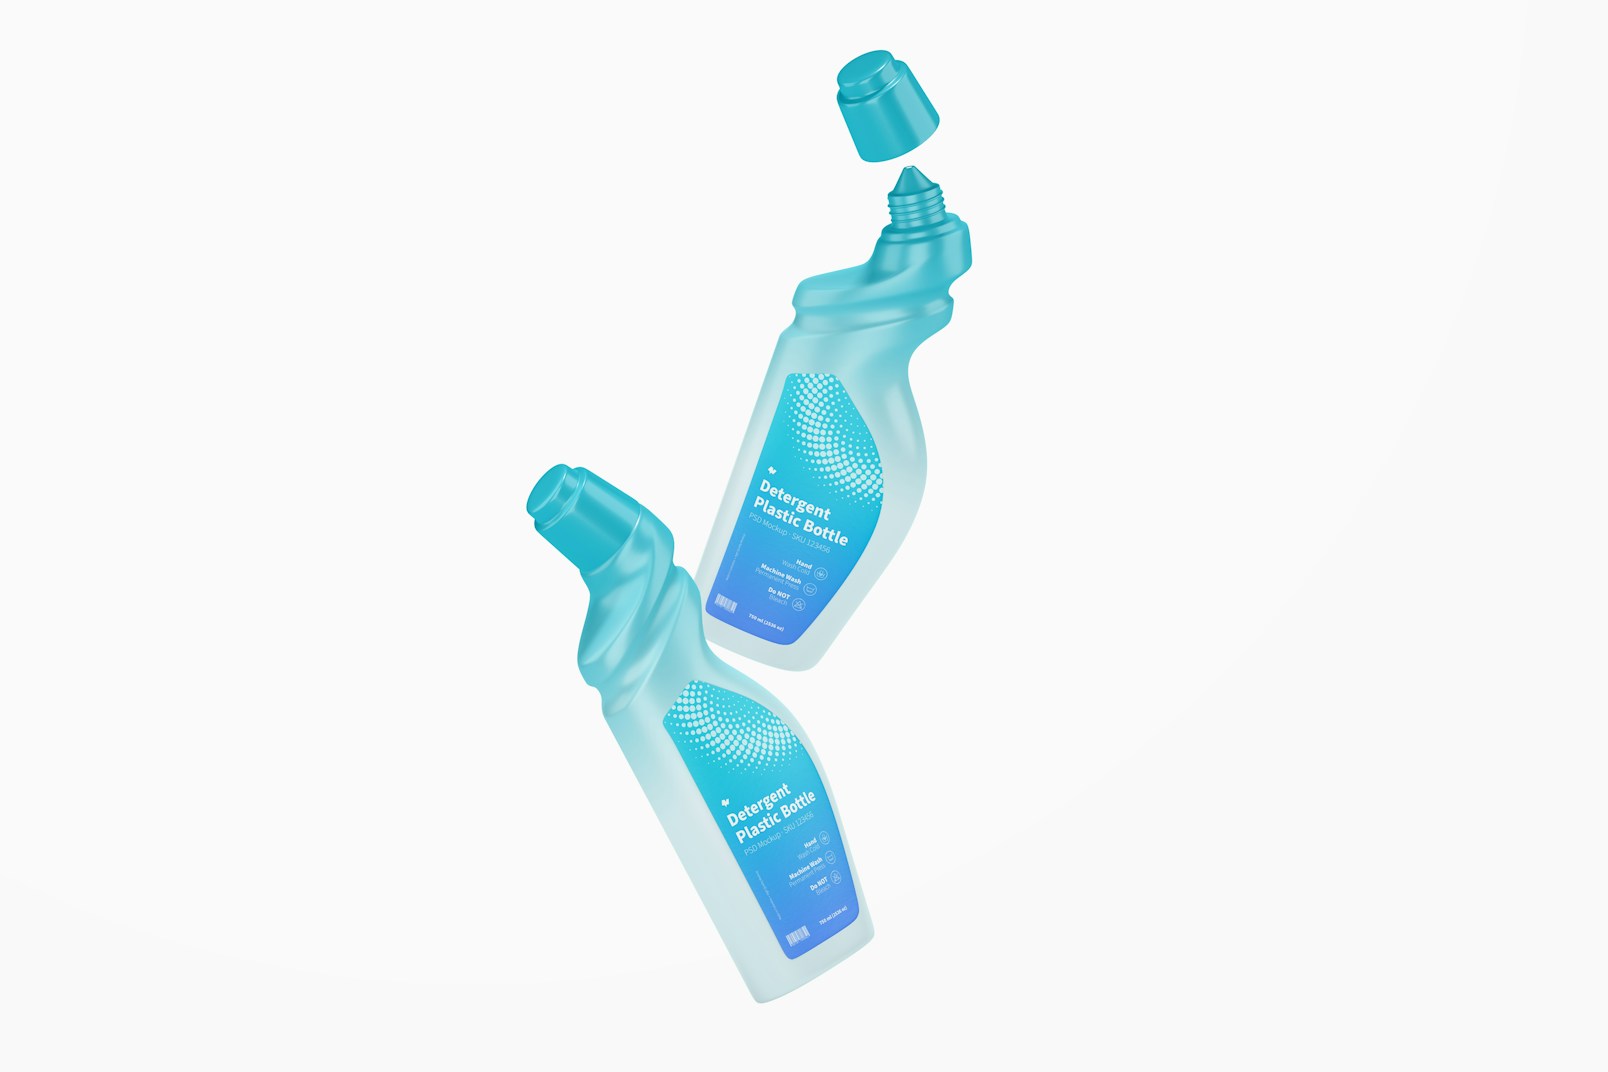 Detergent Plastic Bottle PSD Mockup, Floating